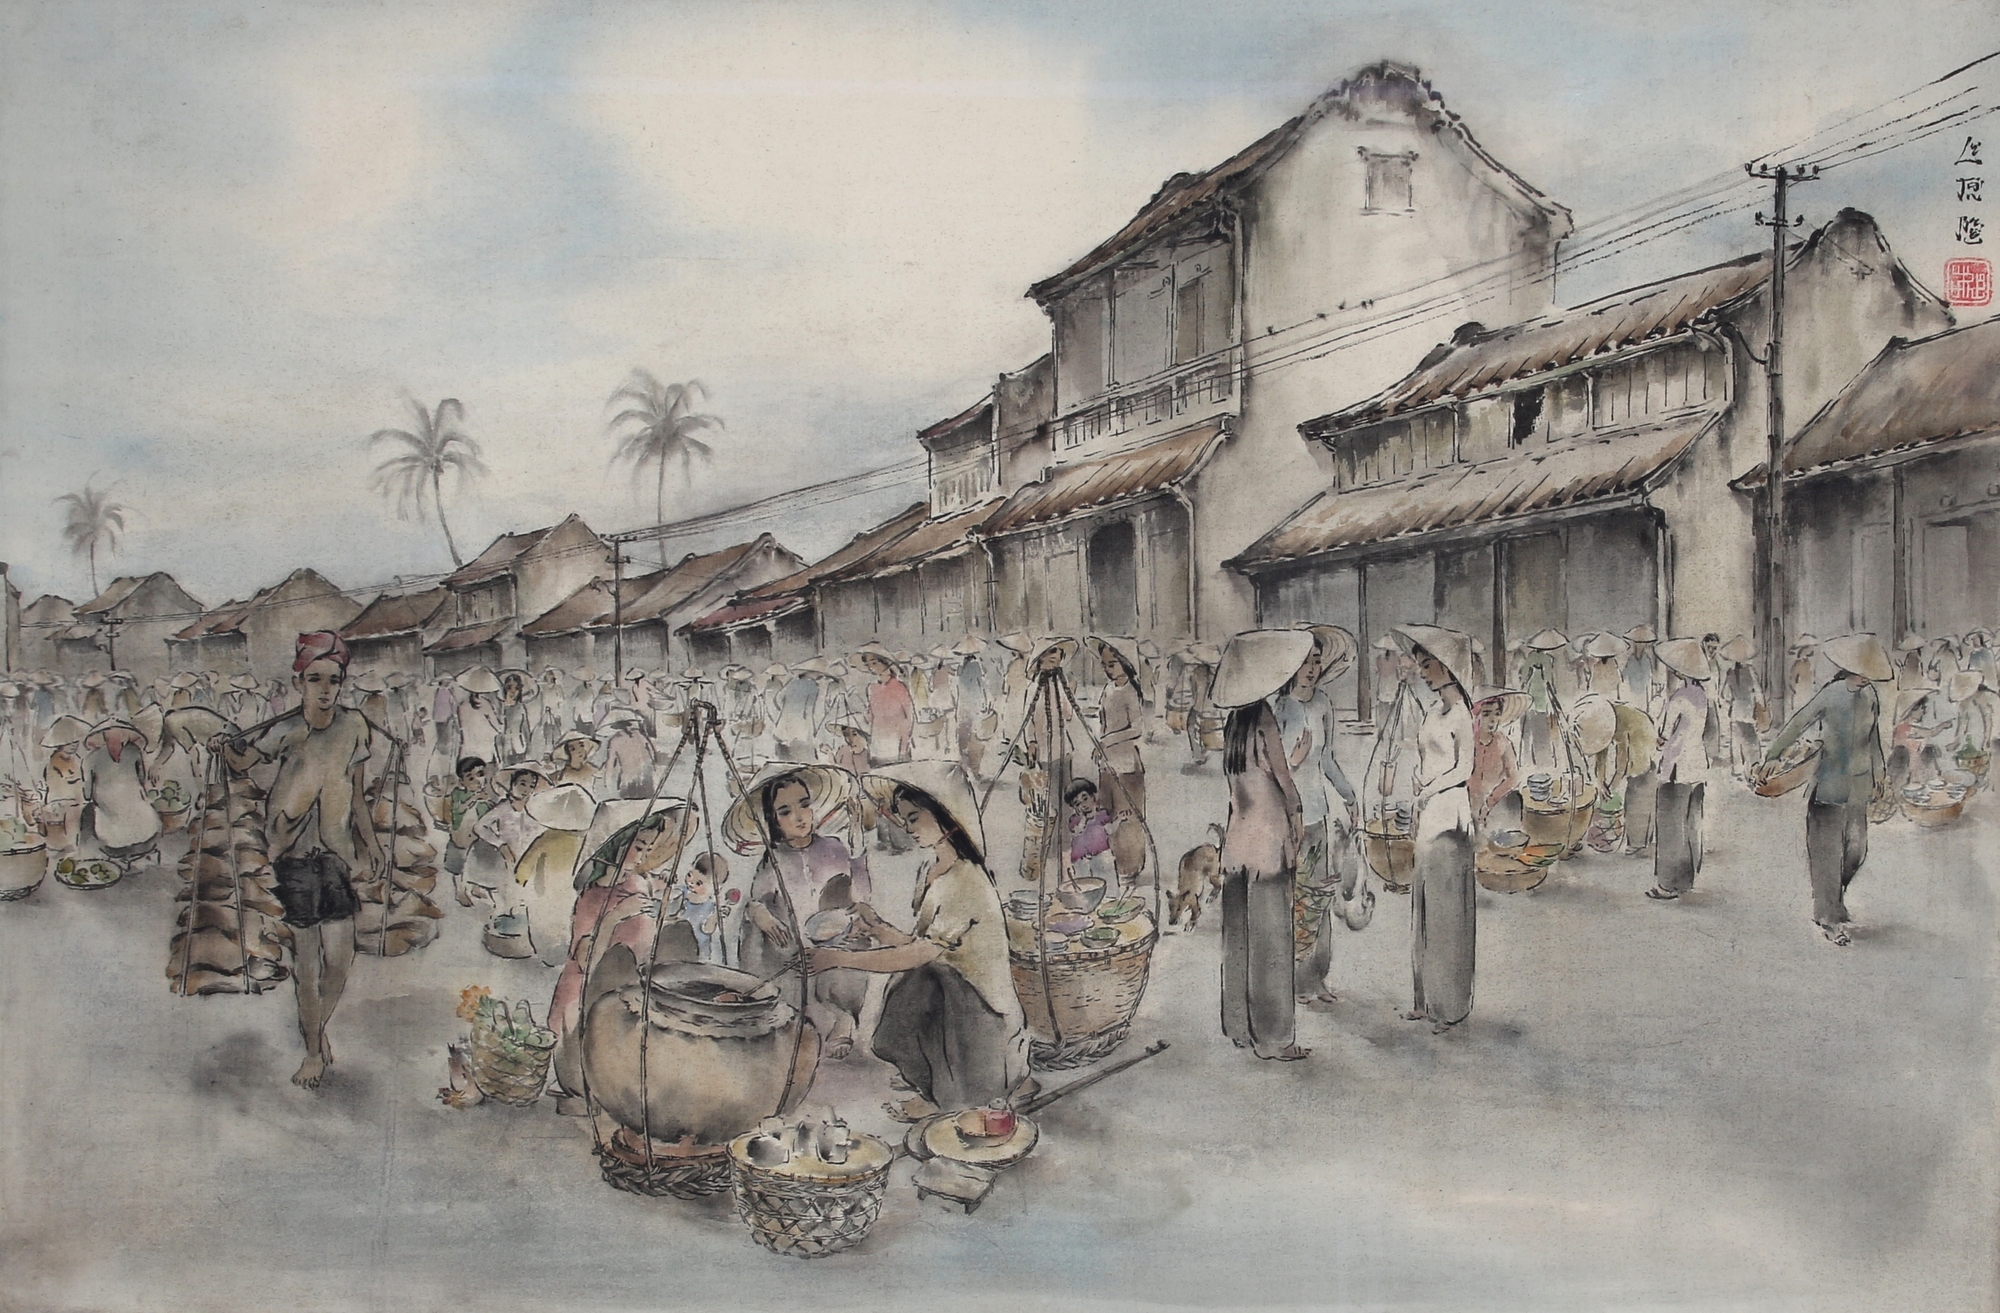 Asien - Seidenmalerei belebte Marktszene, silk painting busy market scene,